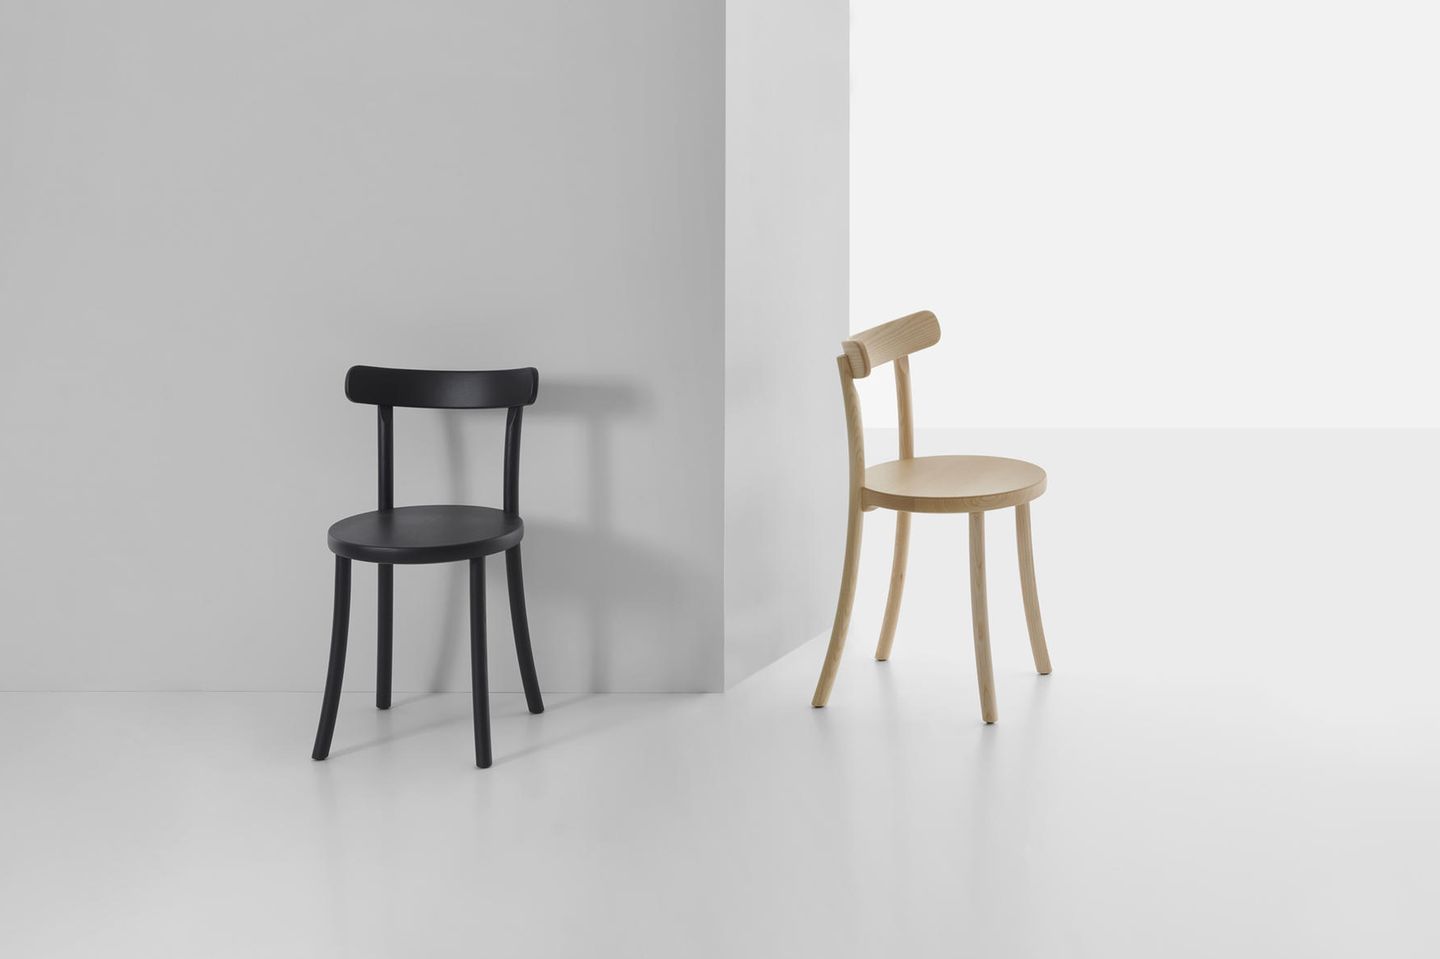 Schwarzer Stuhl und holzfarbener Stuhl vor einer grauen Wand